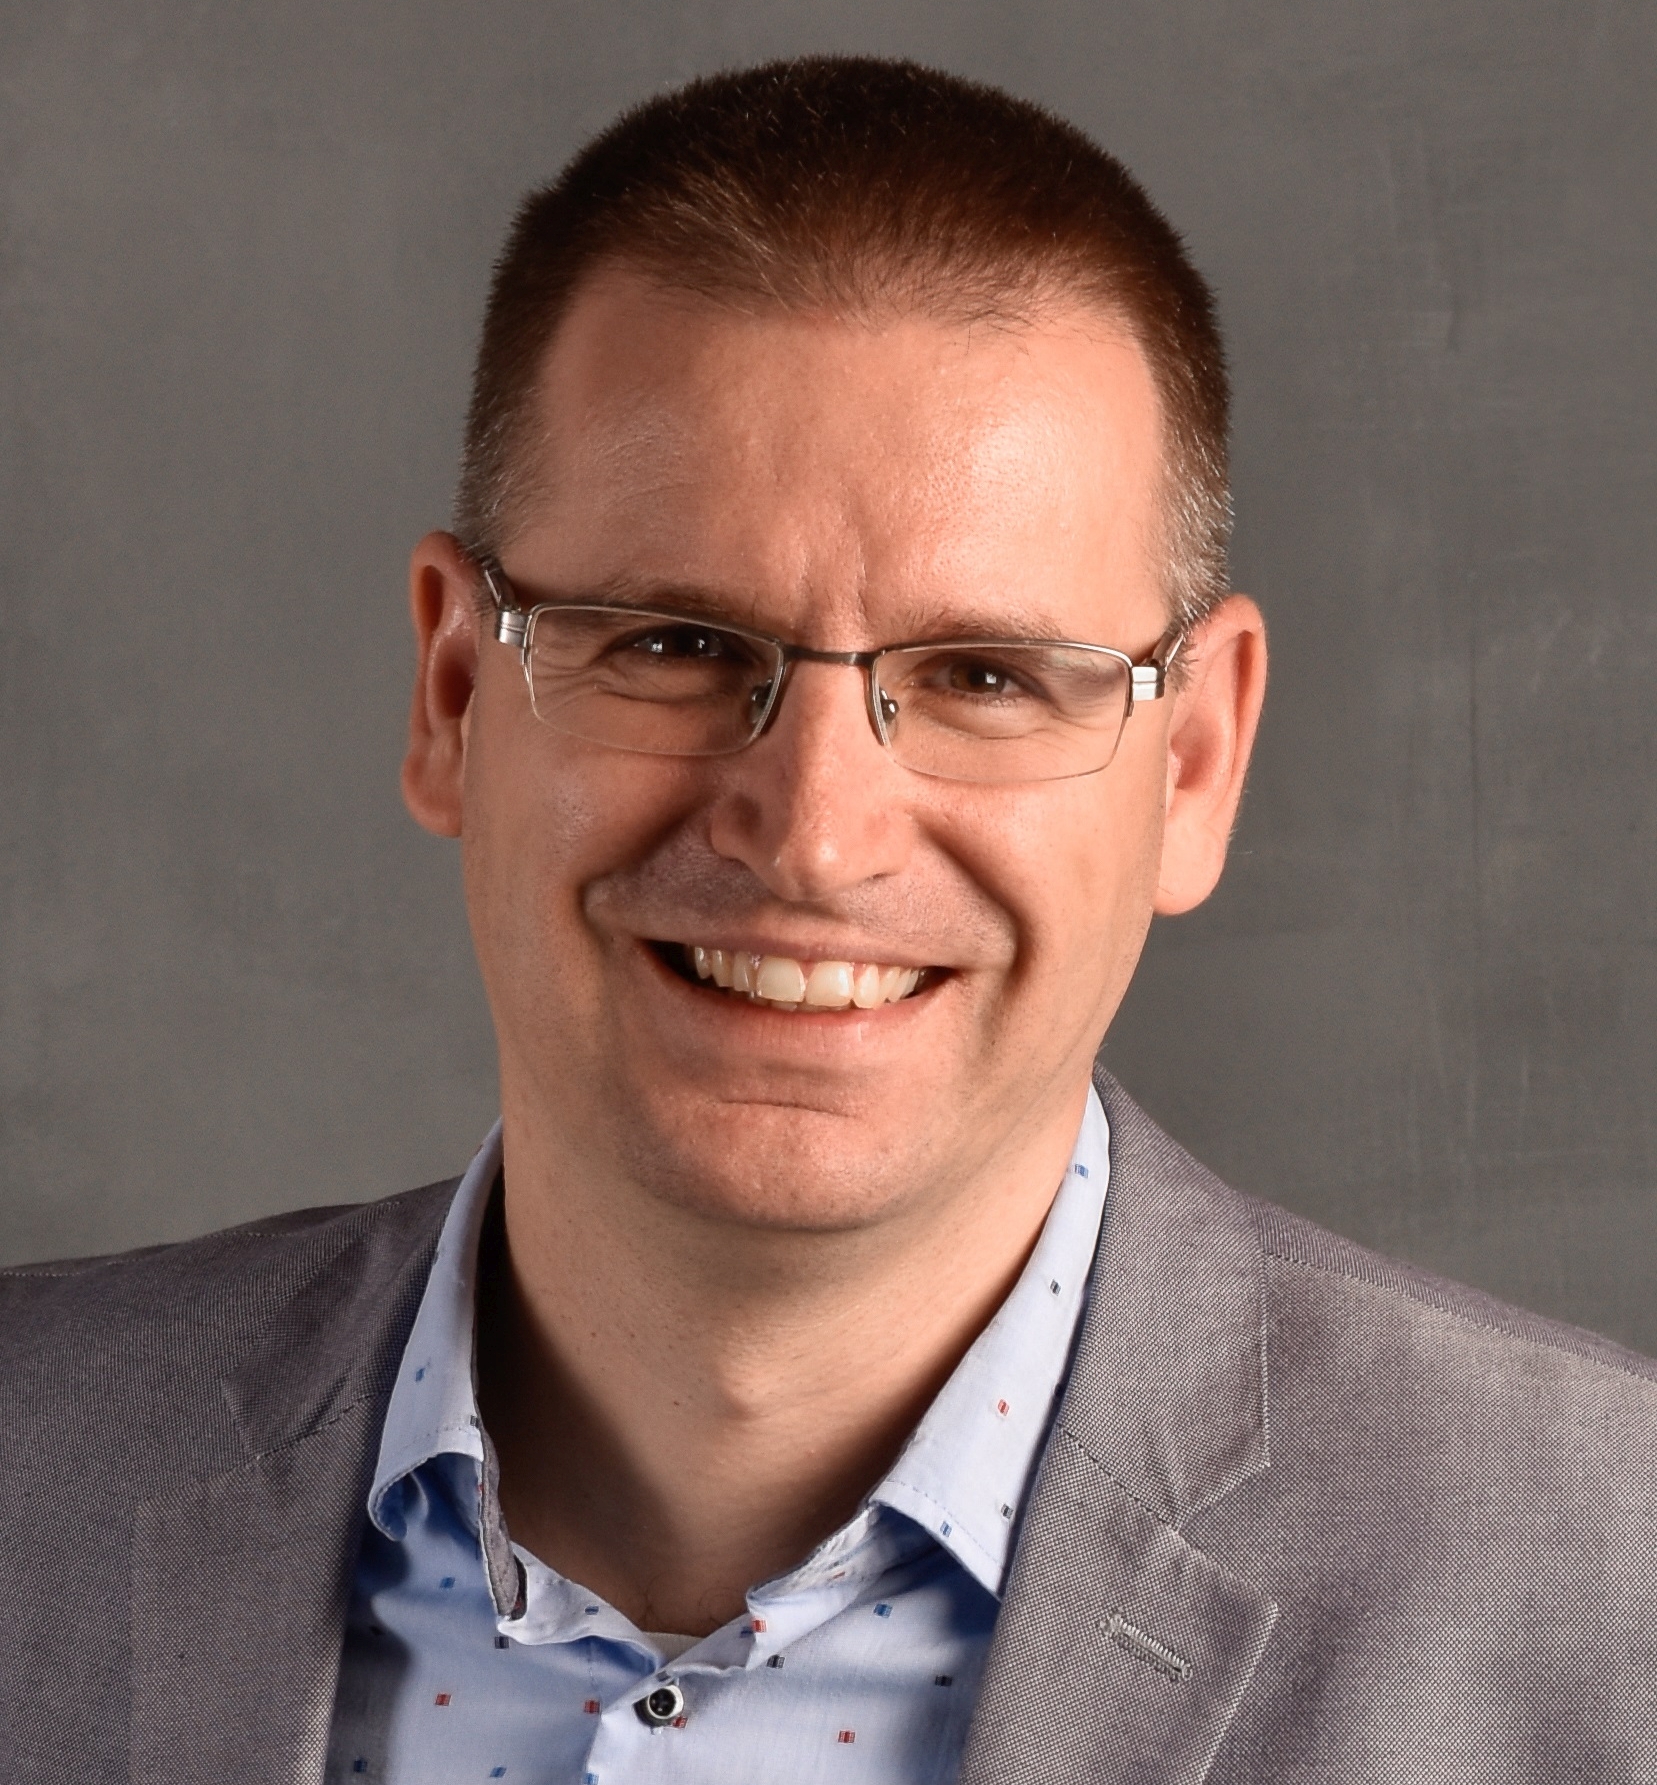 Kaszás Péter, a TeamGuide Menedzsment Tanácsadó Iroda alapítója, vezetéspszichológiai szakértő